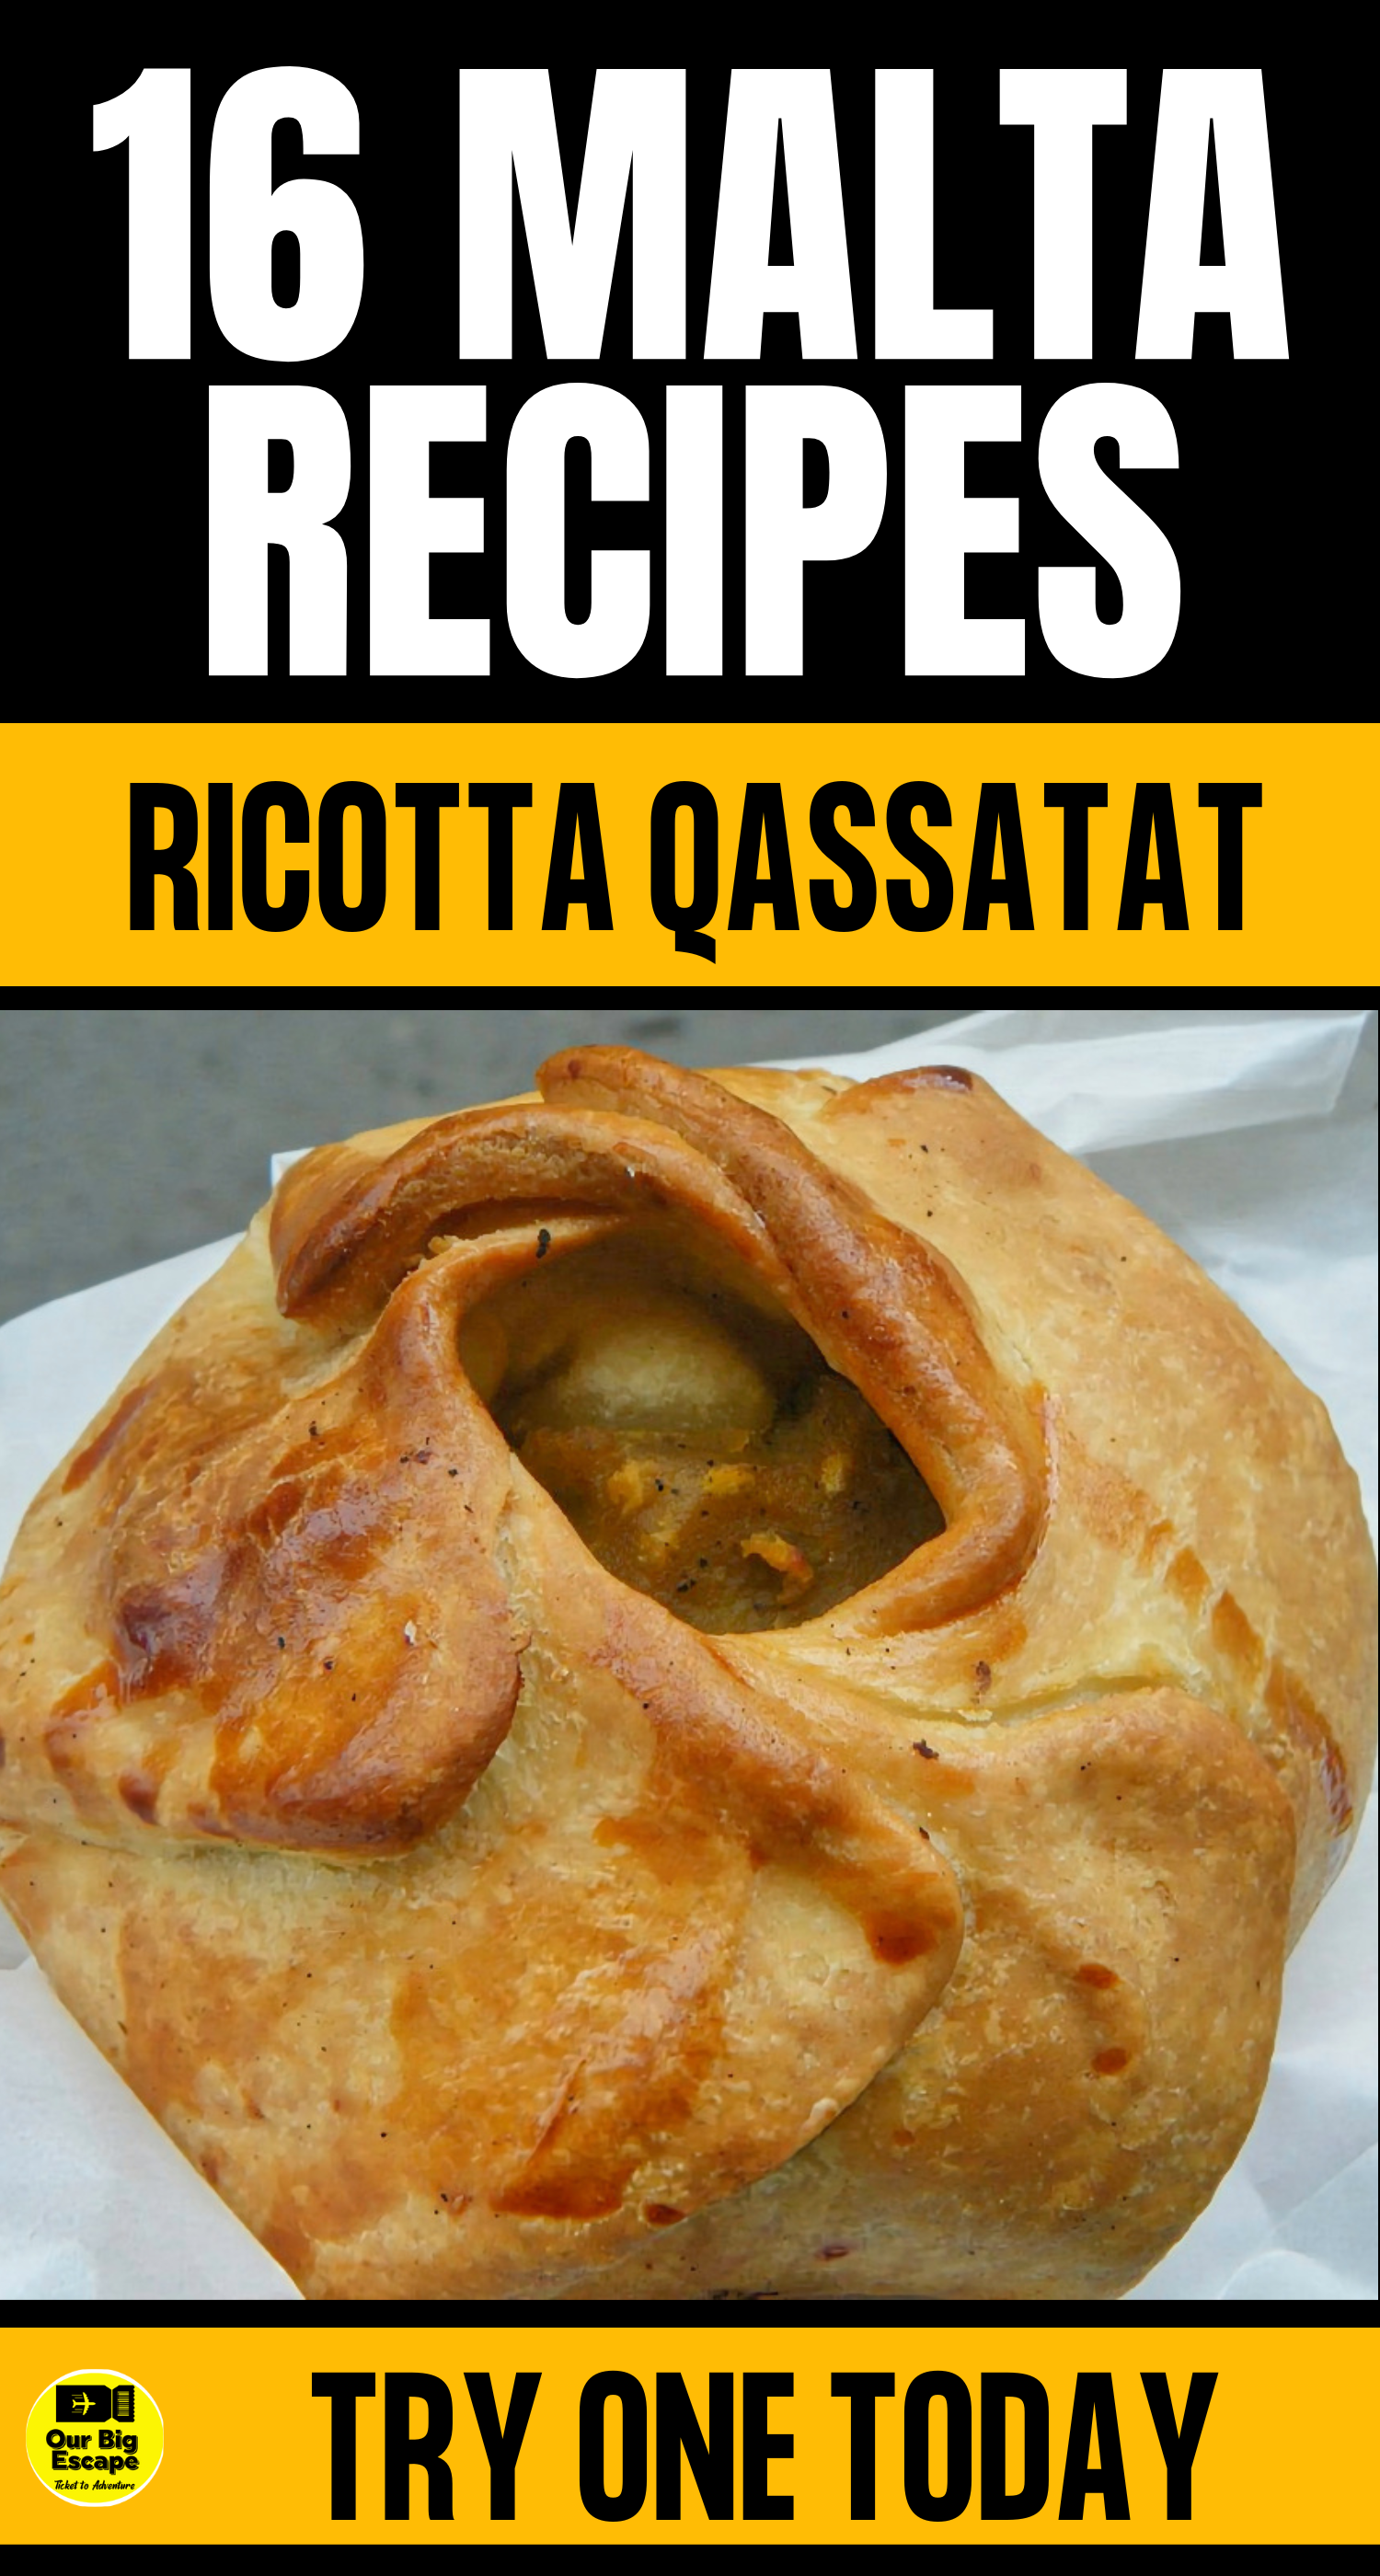 16 Malta Recipes - Ricotta Qassatat